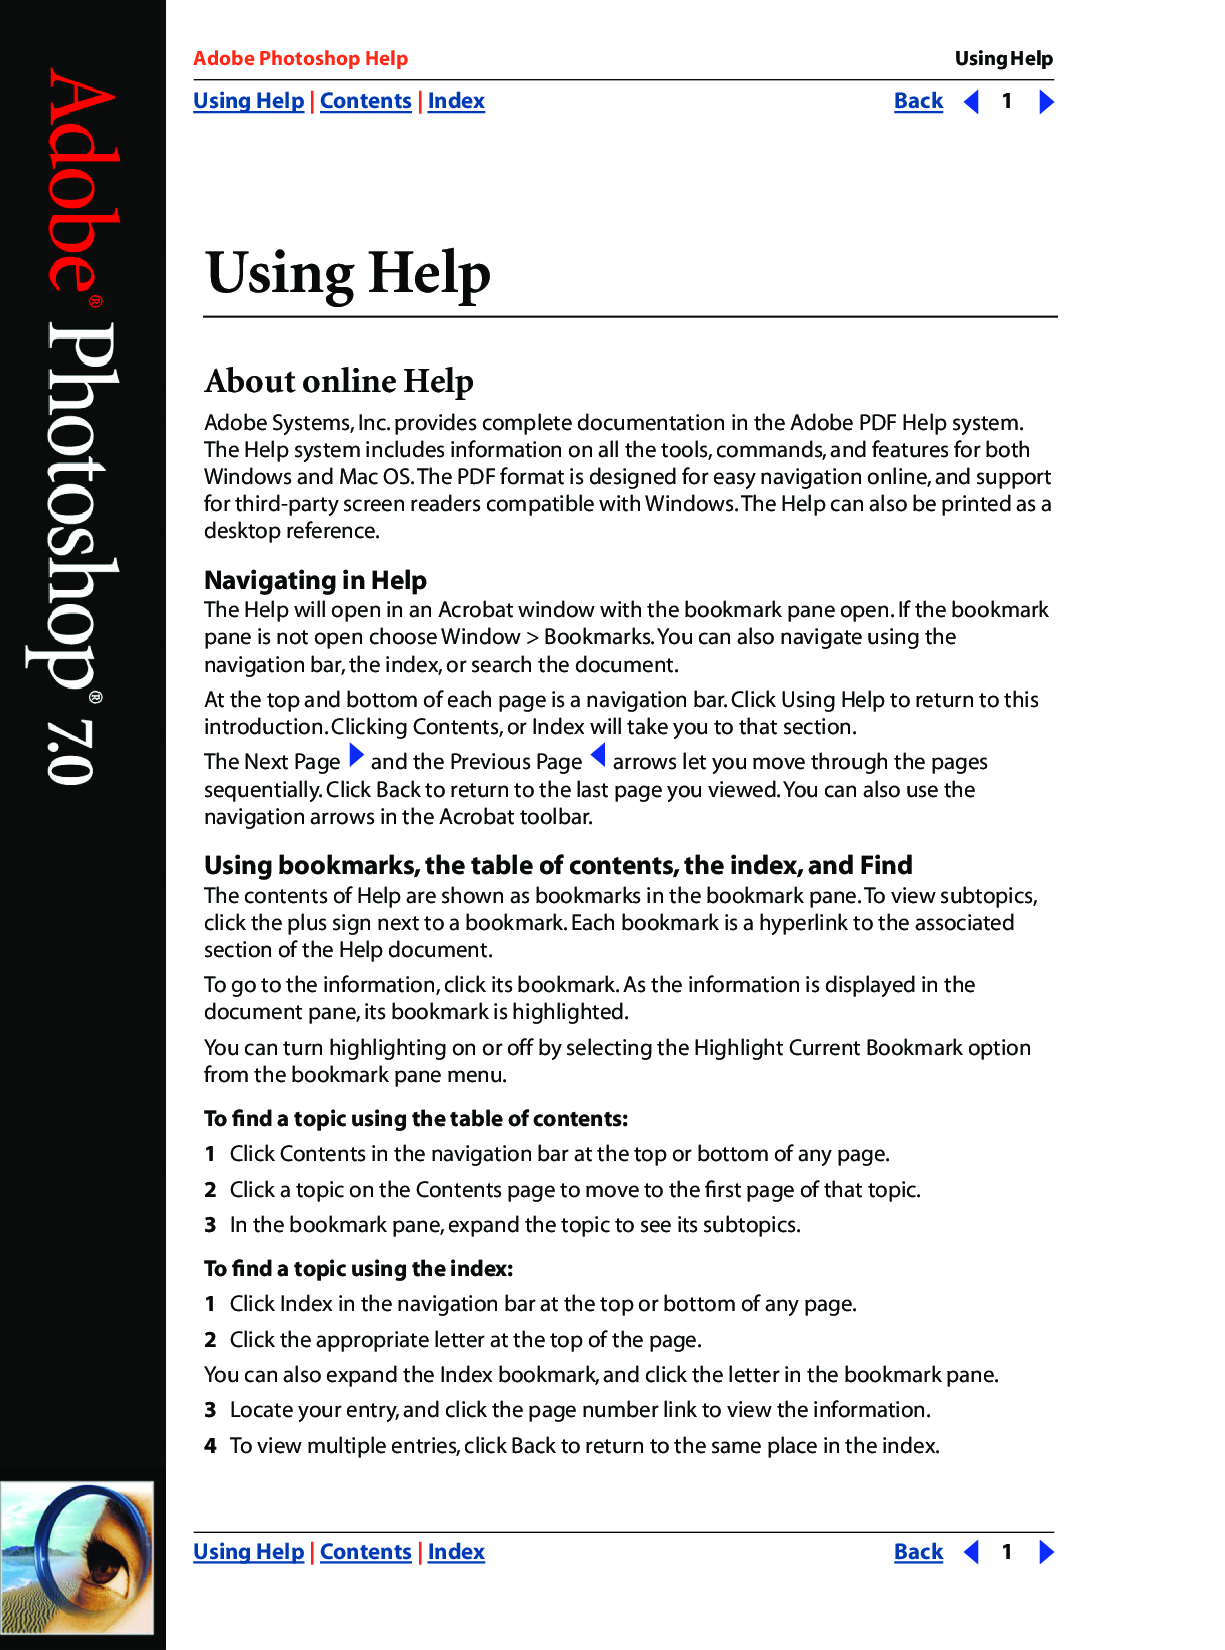 adobe photoshop 7.0 user manual pdf free download